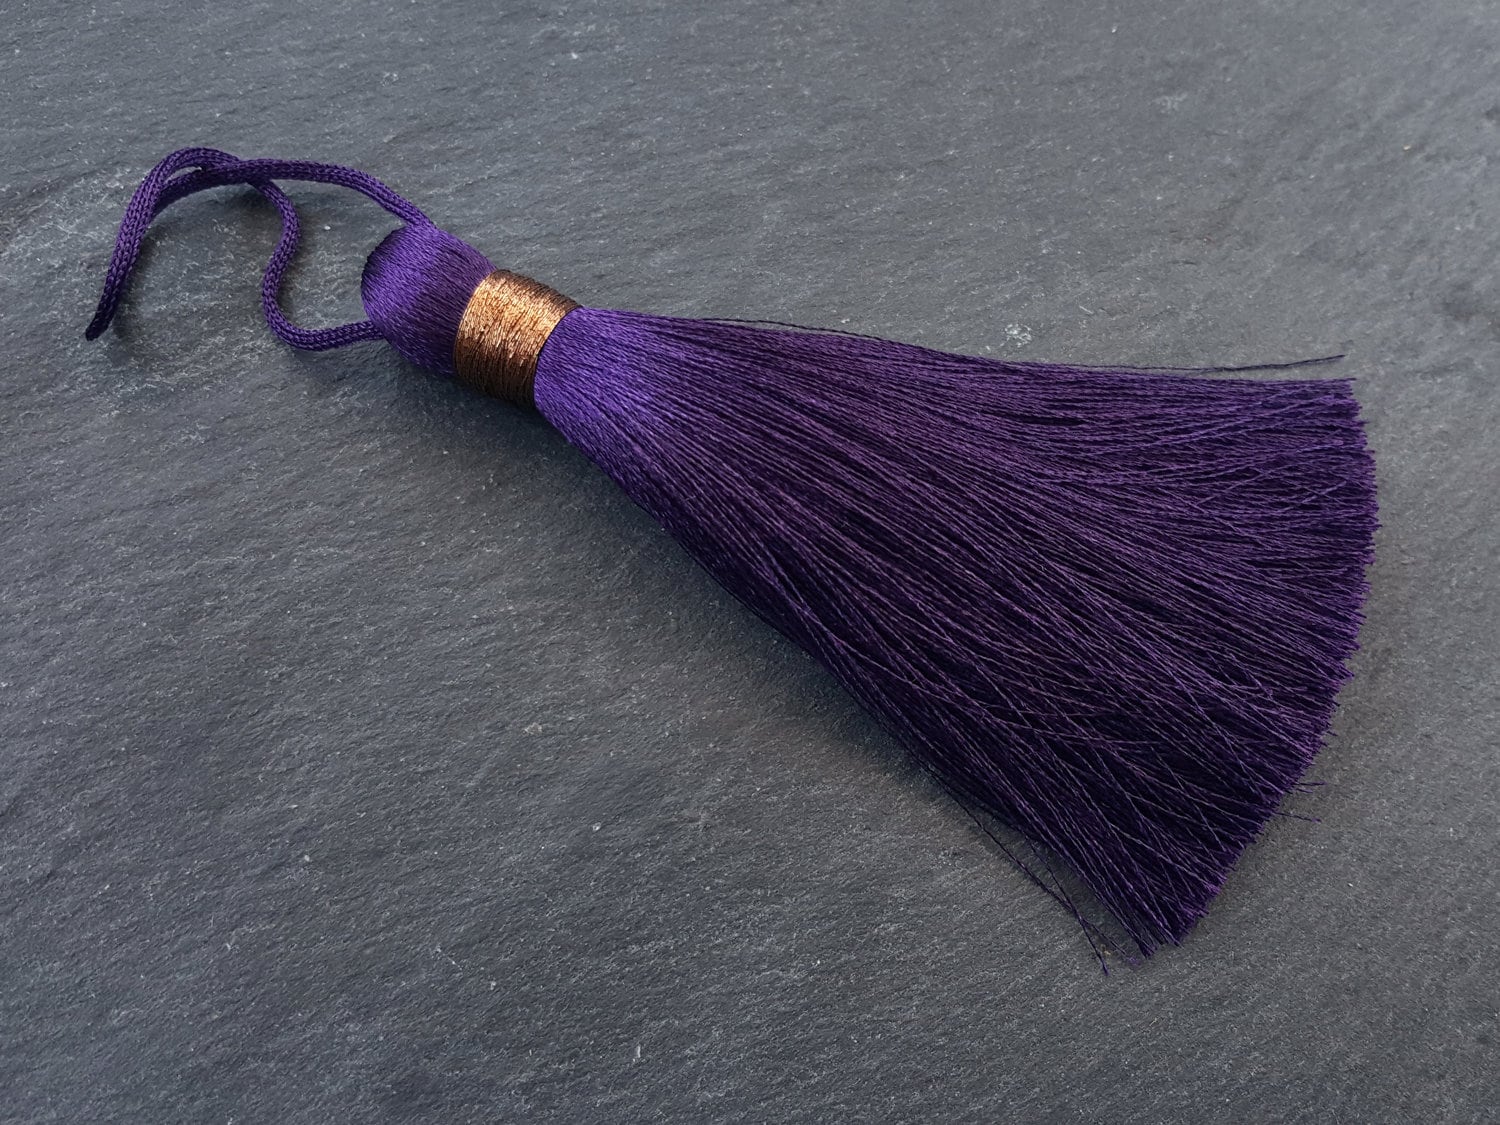 20 PCS Large Silk Tassel Handmade Soft DIY Tassels for Charms Key Tassel Accessories Craft and Jewelry Making purple-20 